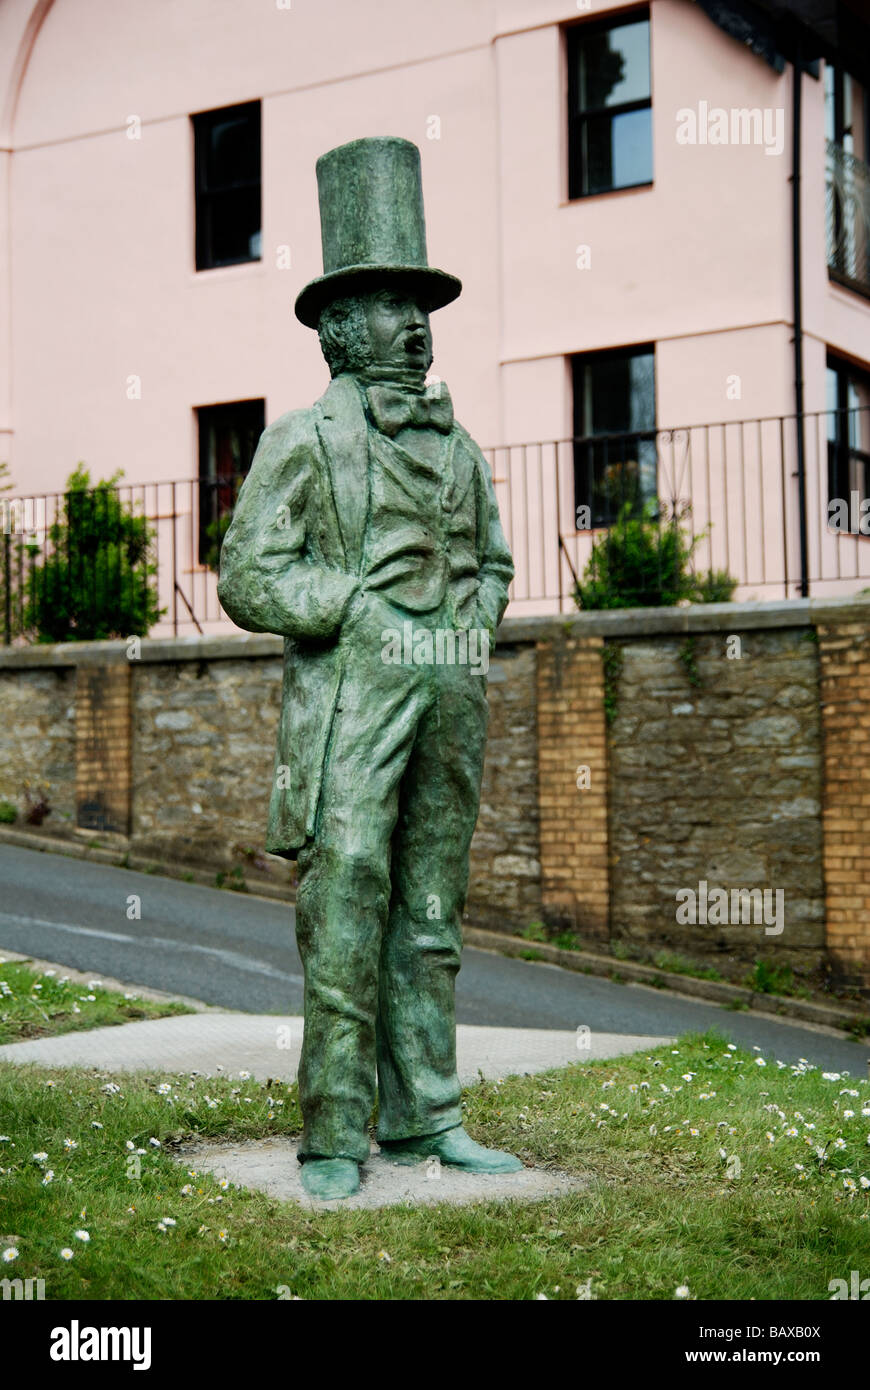 Die Statue von Isambard Kingdom Brunel ist Saltash seitlich von der Brücke in Cornwall, Großbritannien Stockfoto